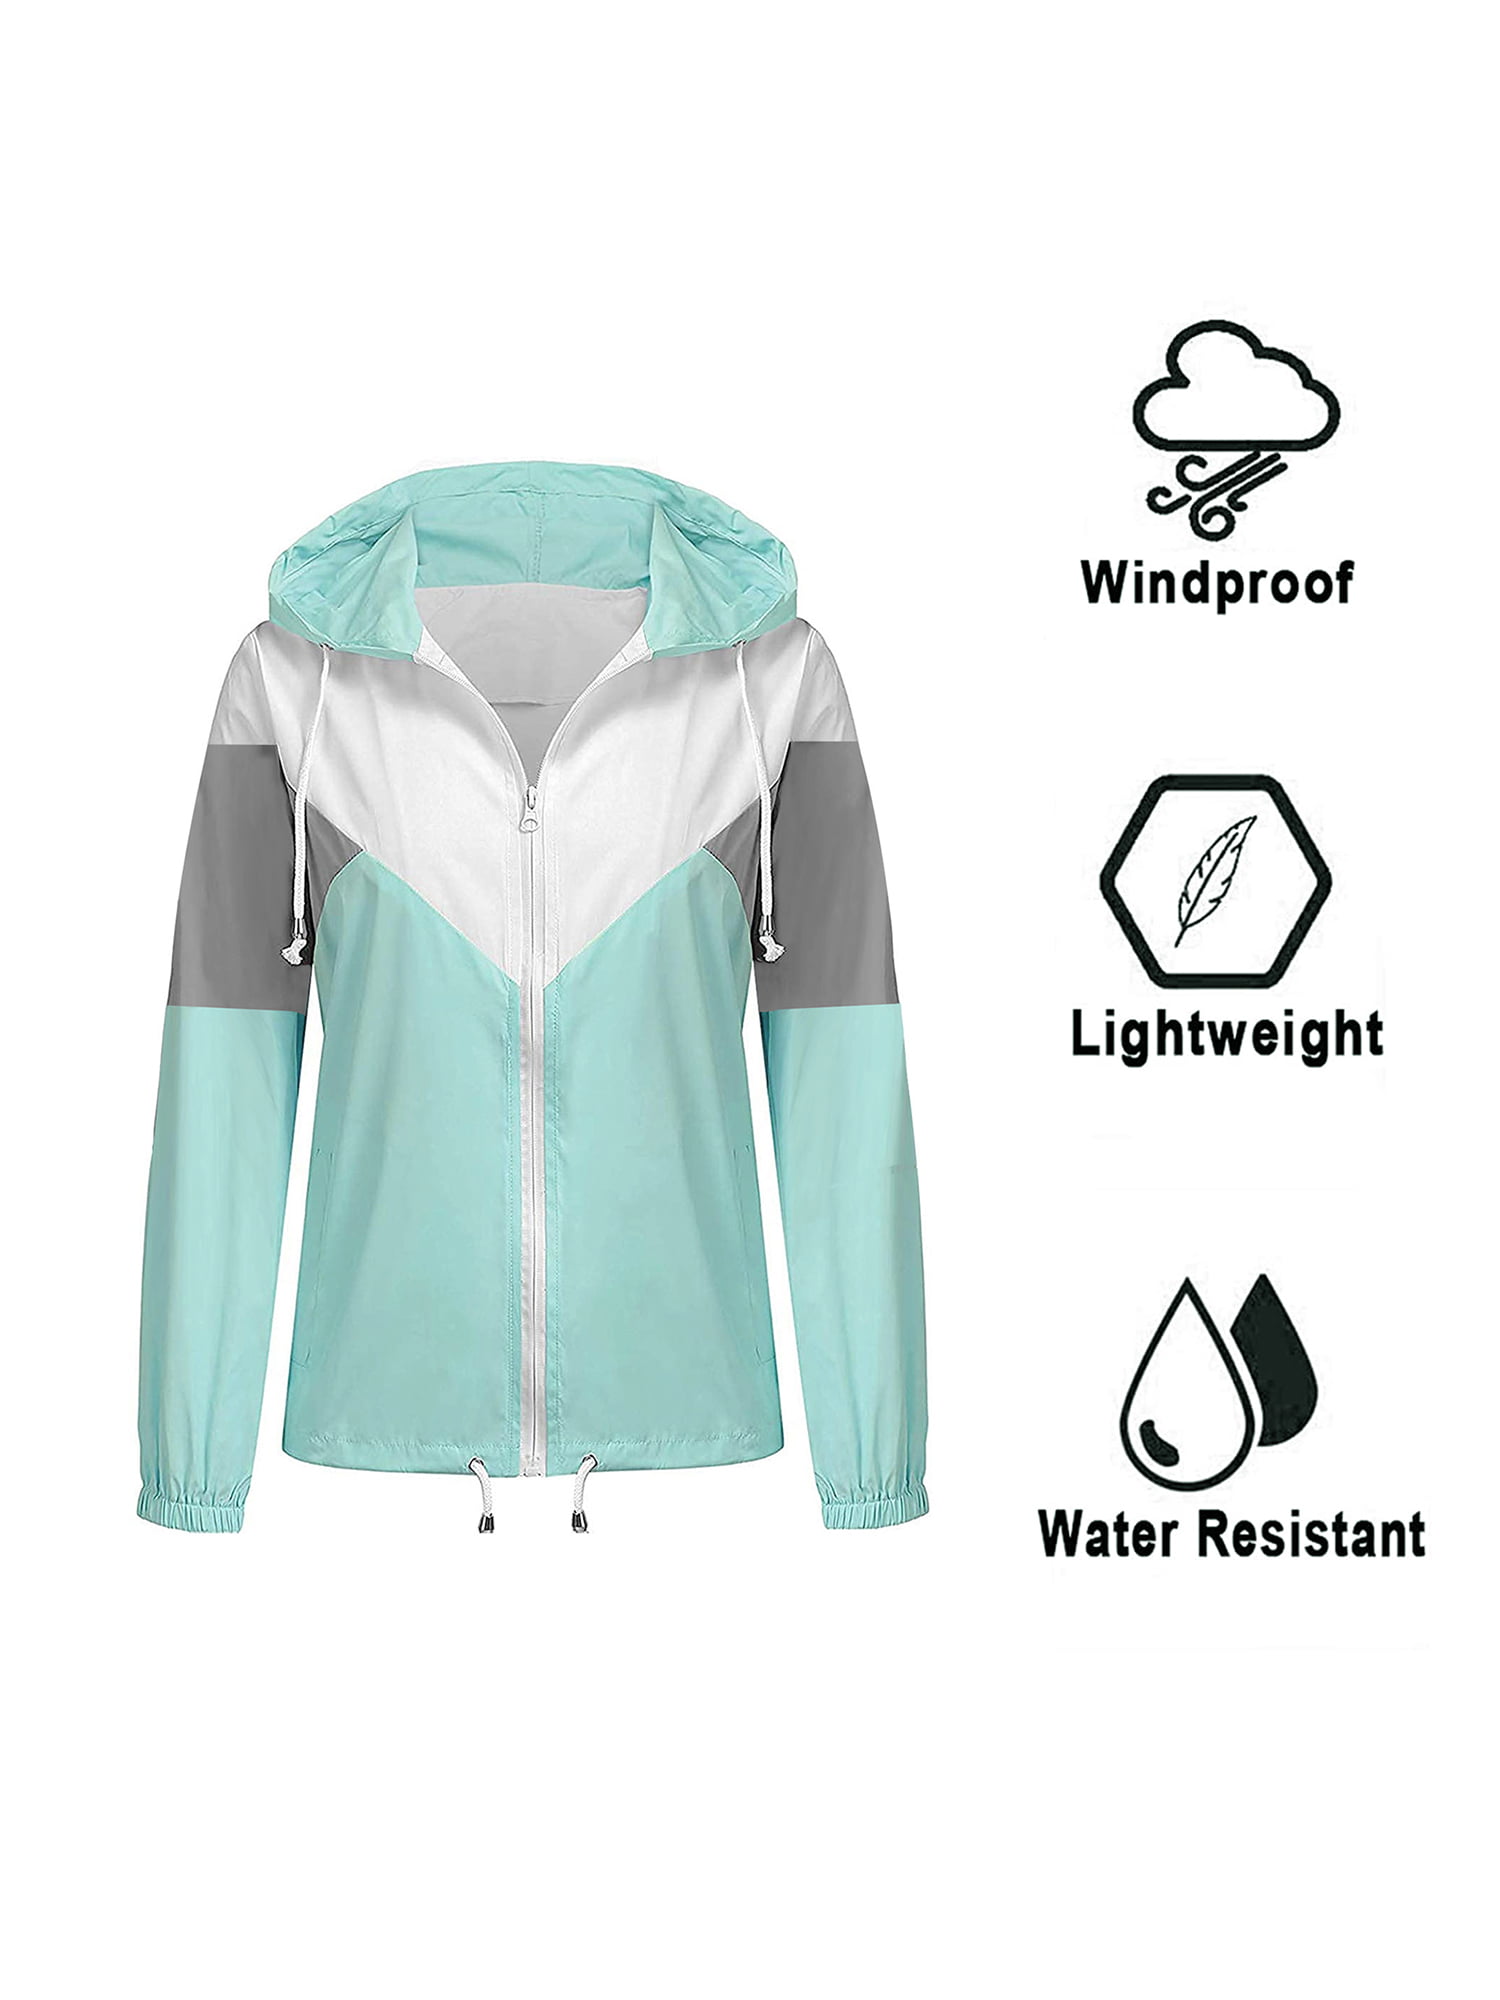 Nantersan Womens Windbreakers Light Weight Windproof Waterproof Raincoat Outdoor Hooded Outwear Jacket 